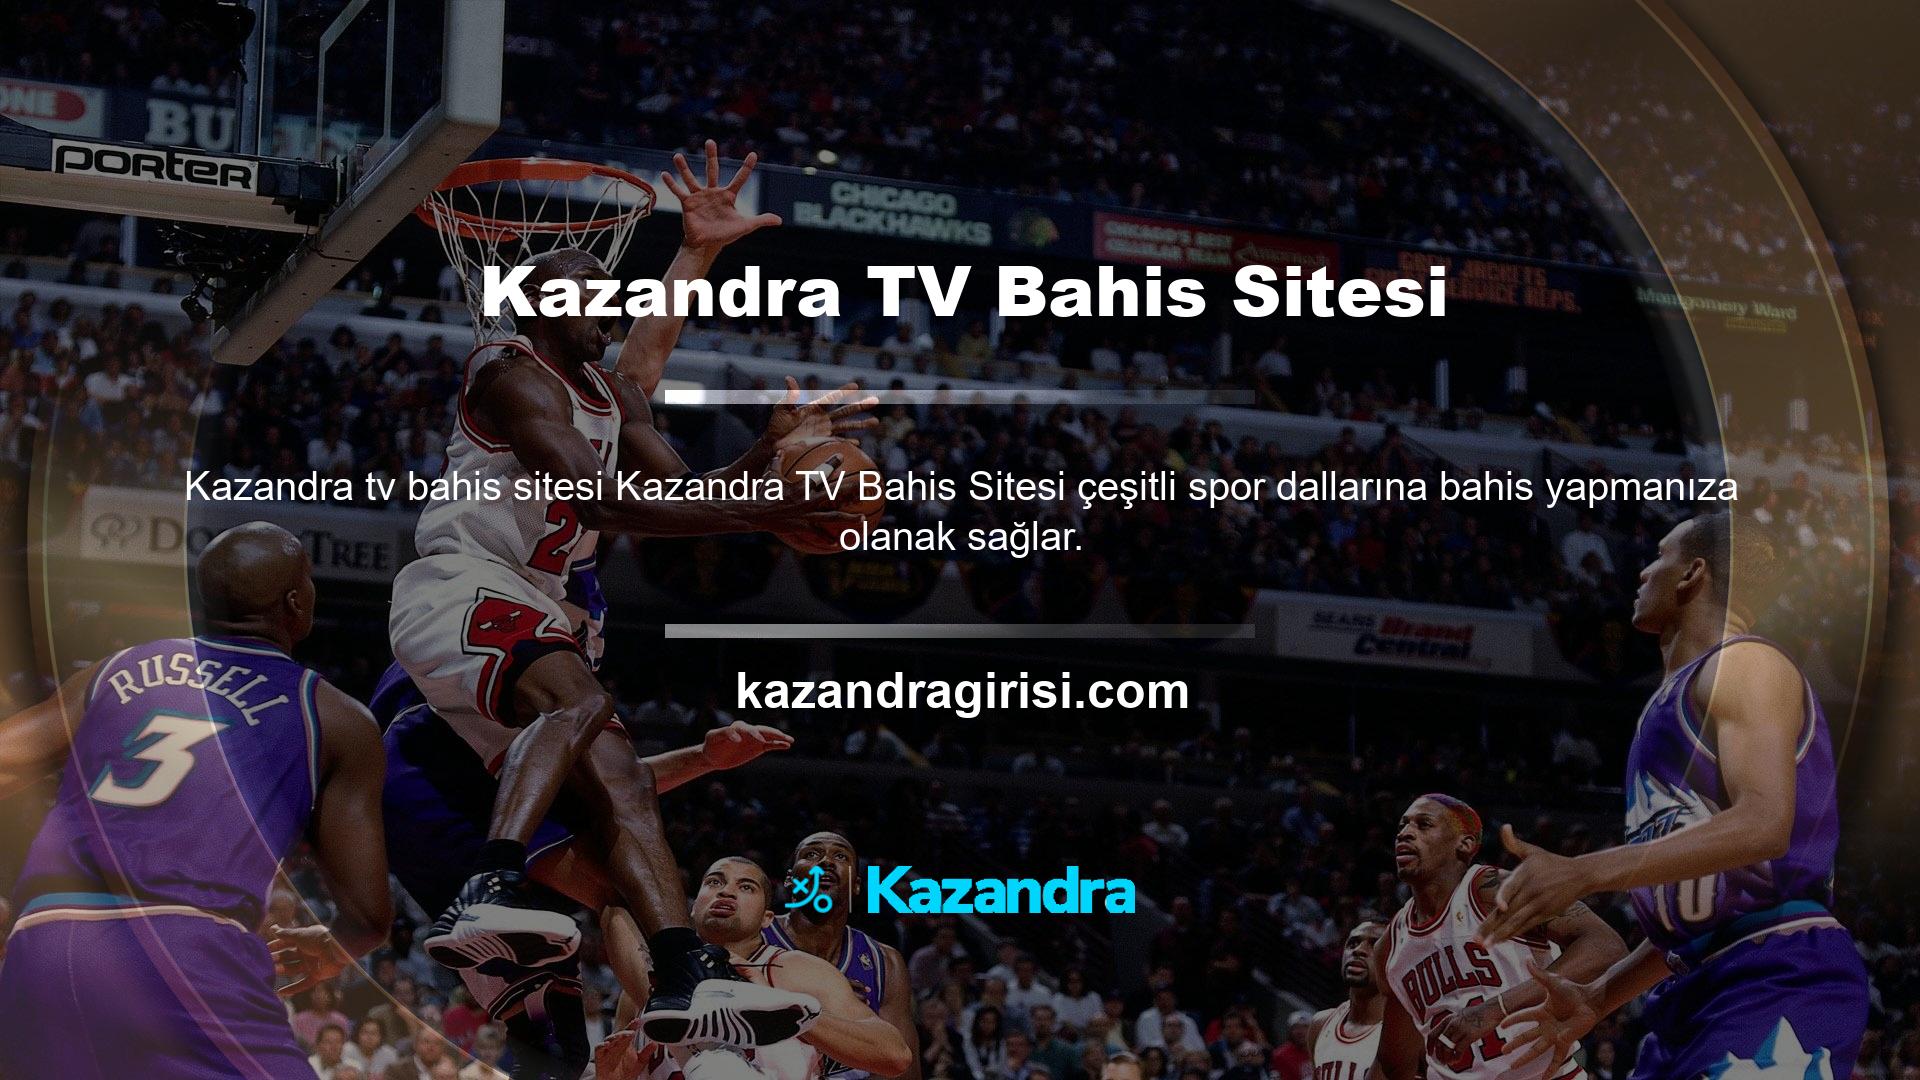 Ayrıca site üzerinden maç istatistiklerini takip edebilir ve iOS mobil bahis sitesi Kazandra TV’yi indirebilirsiniz